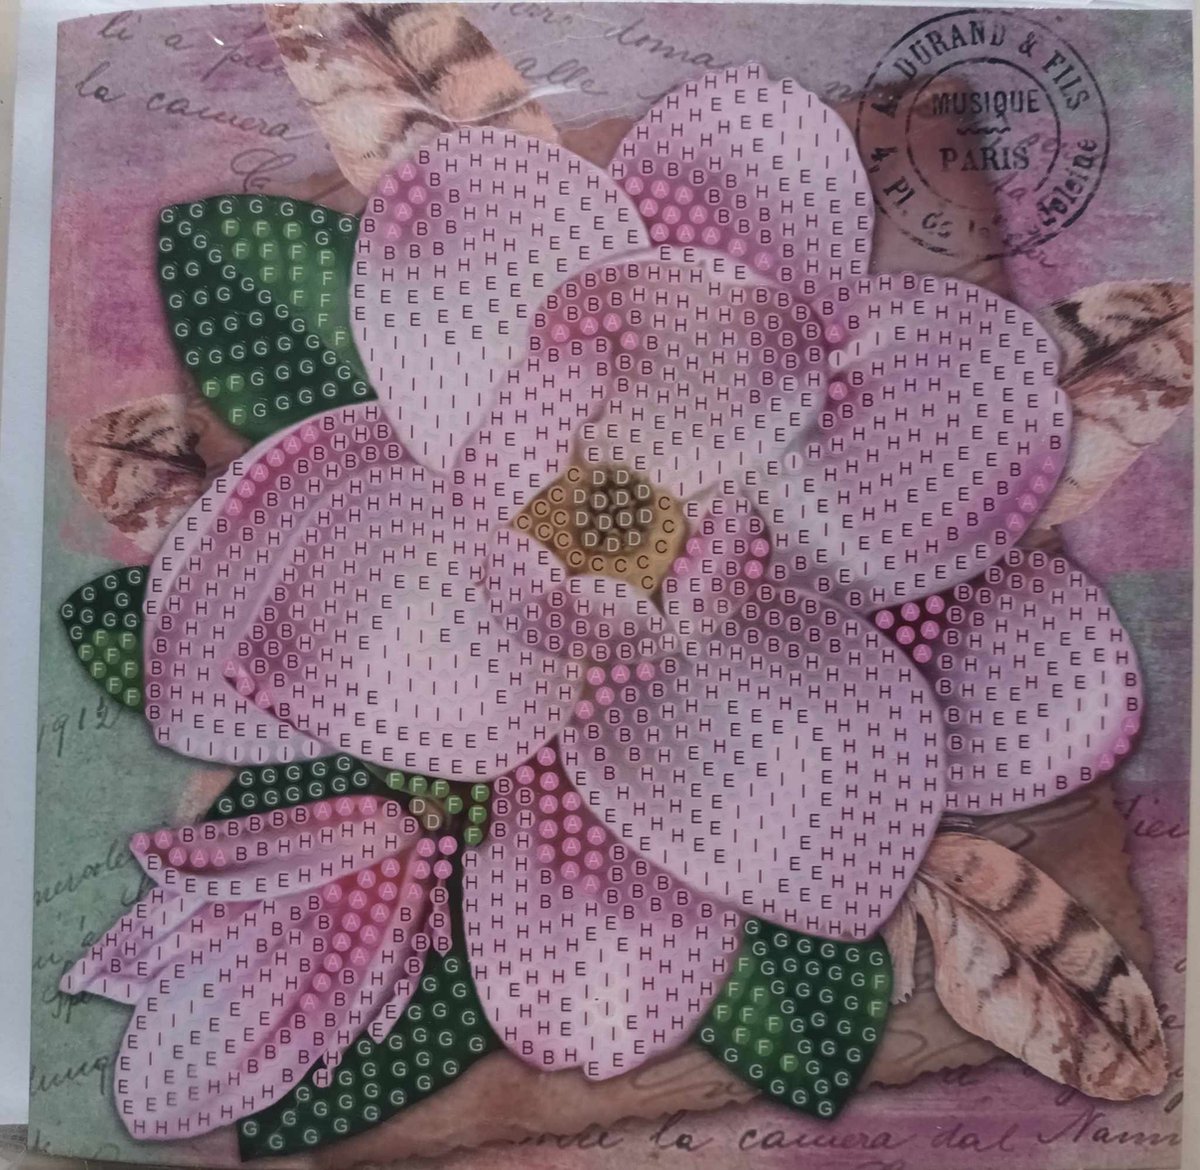 Diamond painting - bloemen kaart - wenskaart voor een gedeelte te painten - Roze bloem